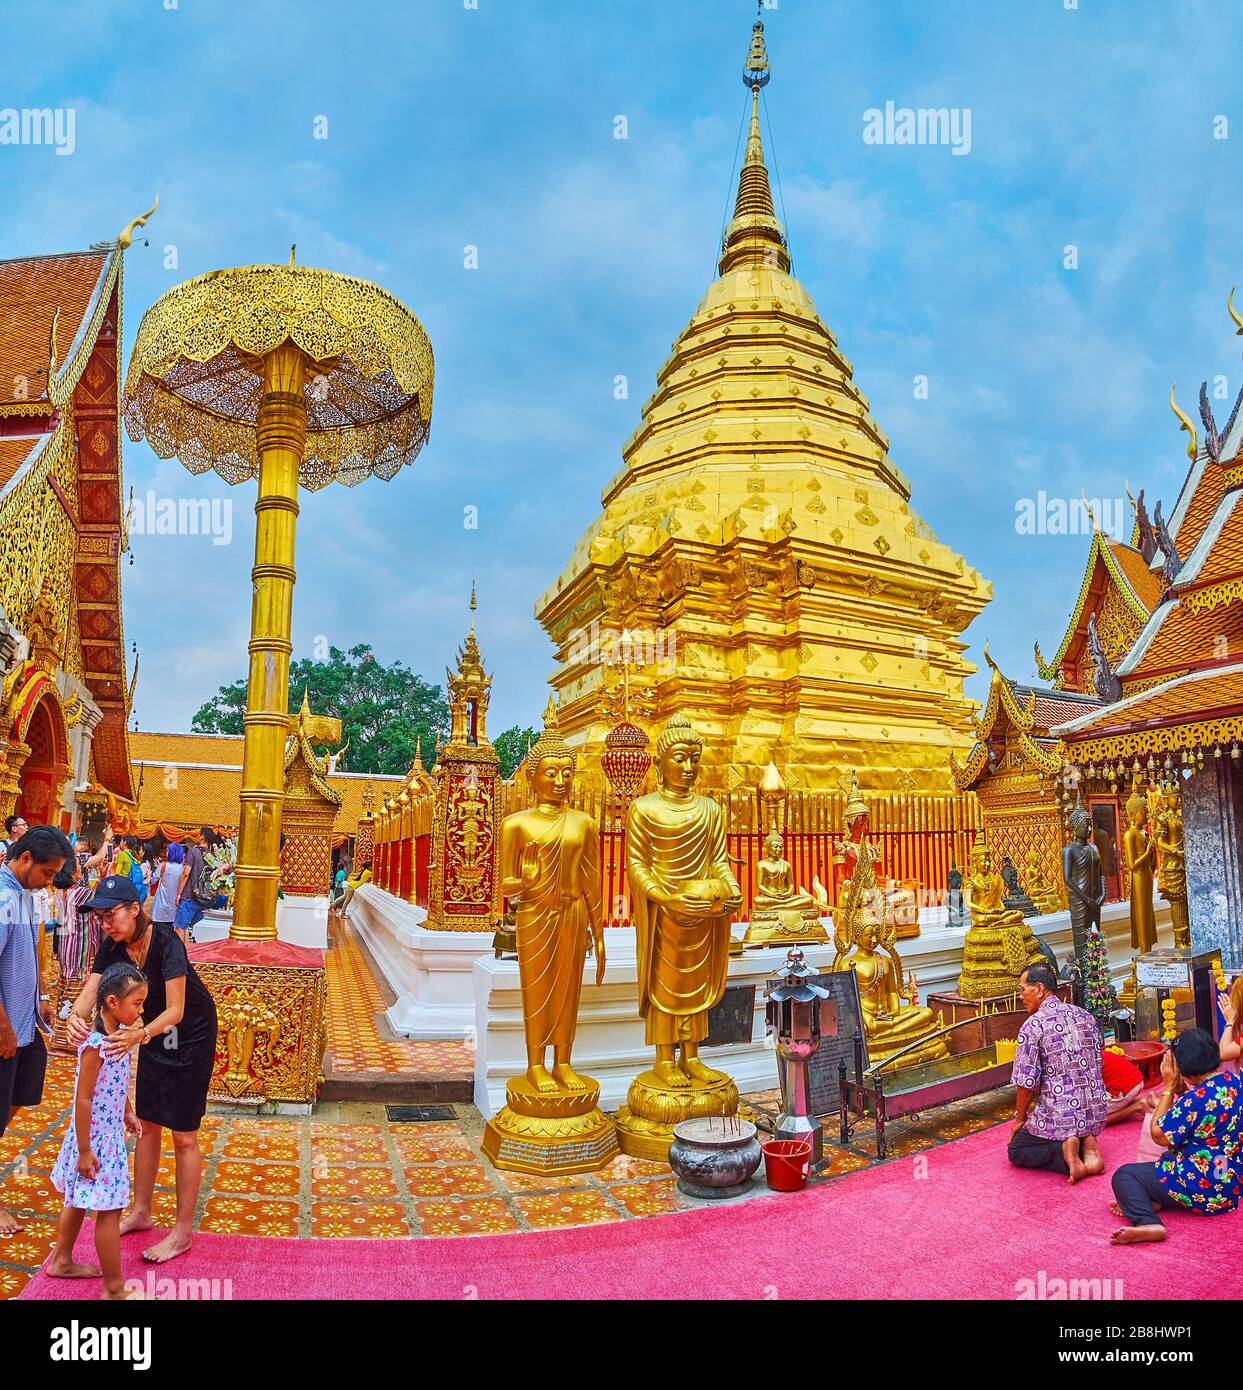 CHIANG Mai, THAILAND - 7. MAI 2019: Beobachten Sie die prächtige goldene Pagode des Wat Phra that Doi Suthep Tempels mit Gürtelmustern, schöner Hti finial, ch Stockfoto